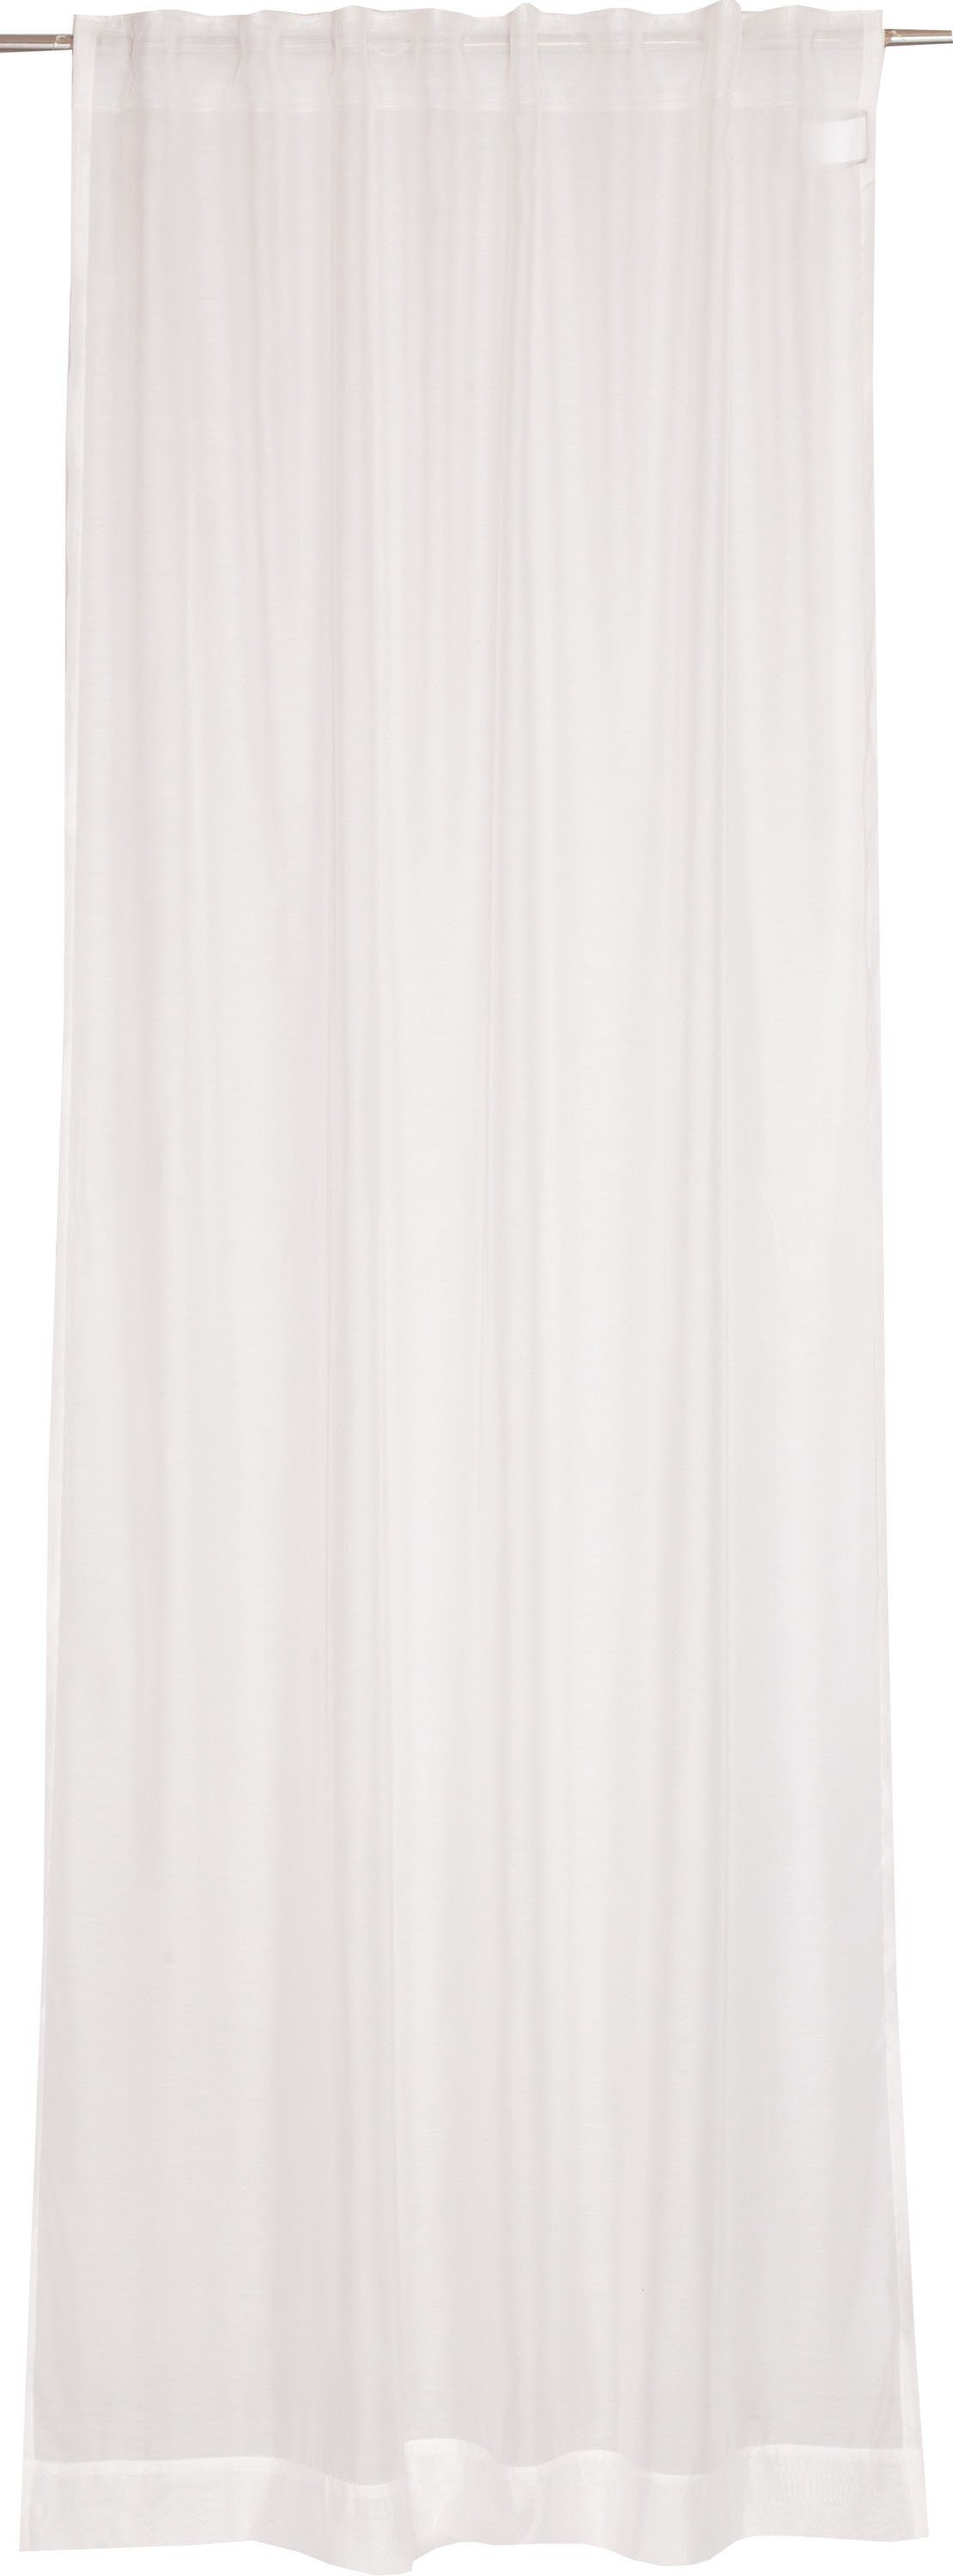 Vorhang Solid, SCHÖNER wollweiß/offwhite/weiß Jacquard, (1 zeilosen, im unifarbenen Look St), Multifunktionsband WOHNEN-Kollektion, halbtransparent